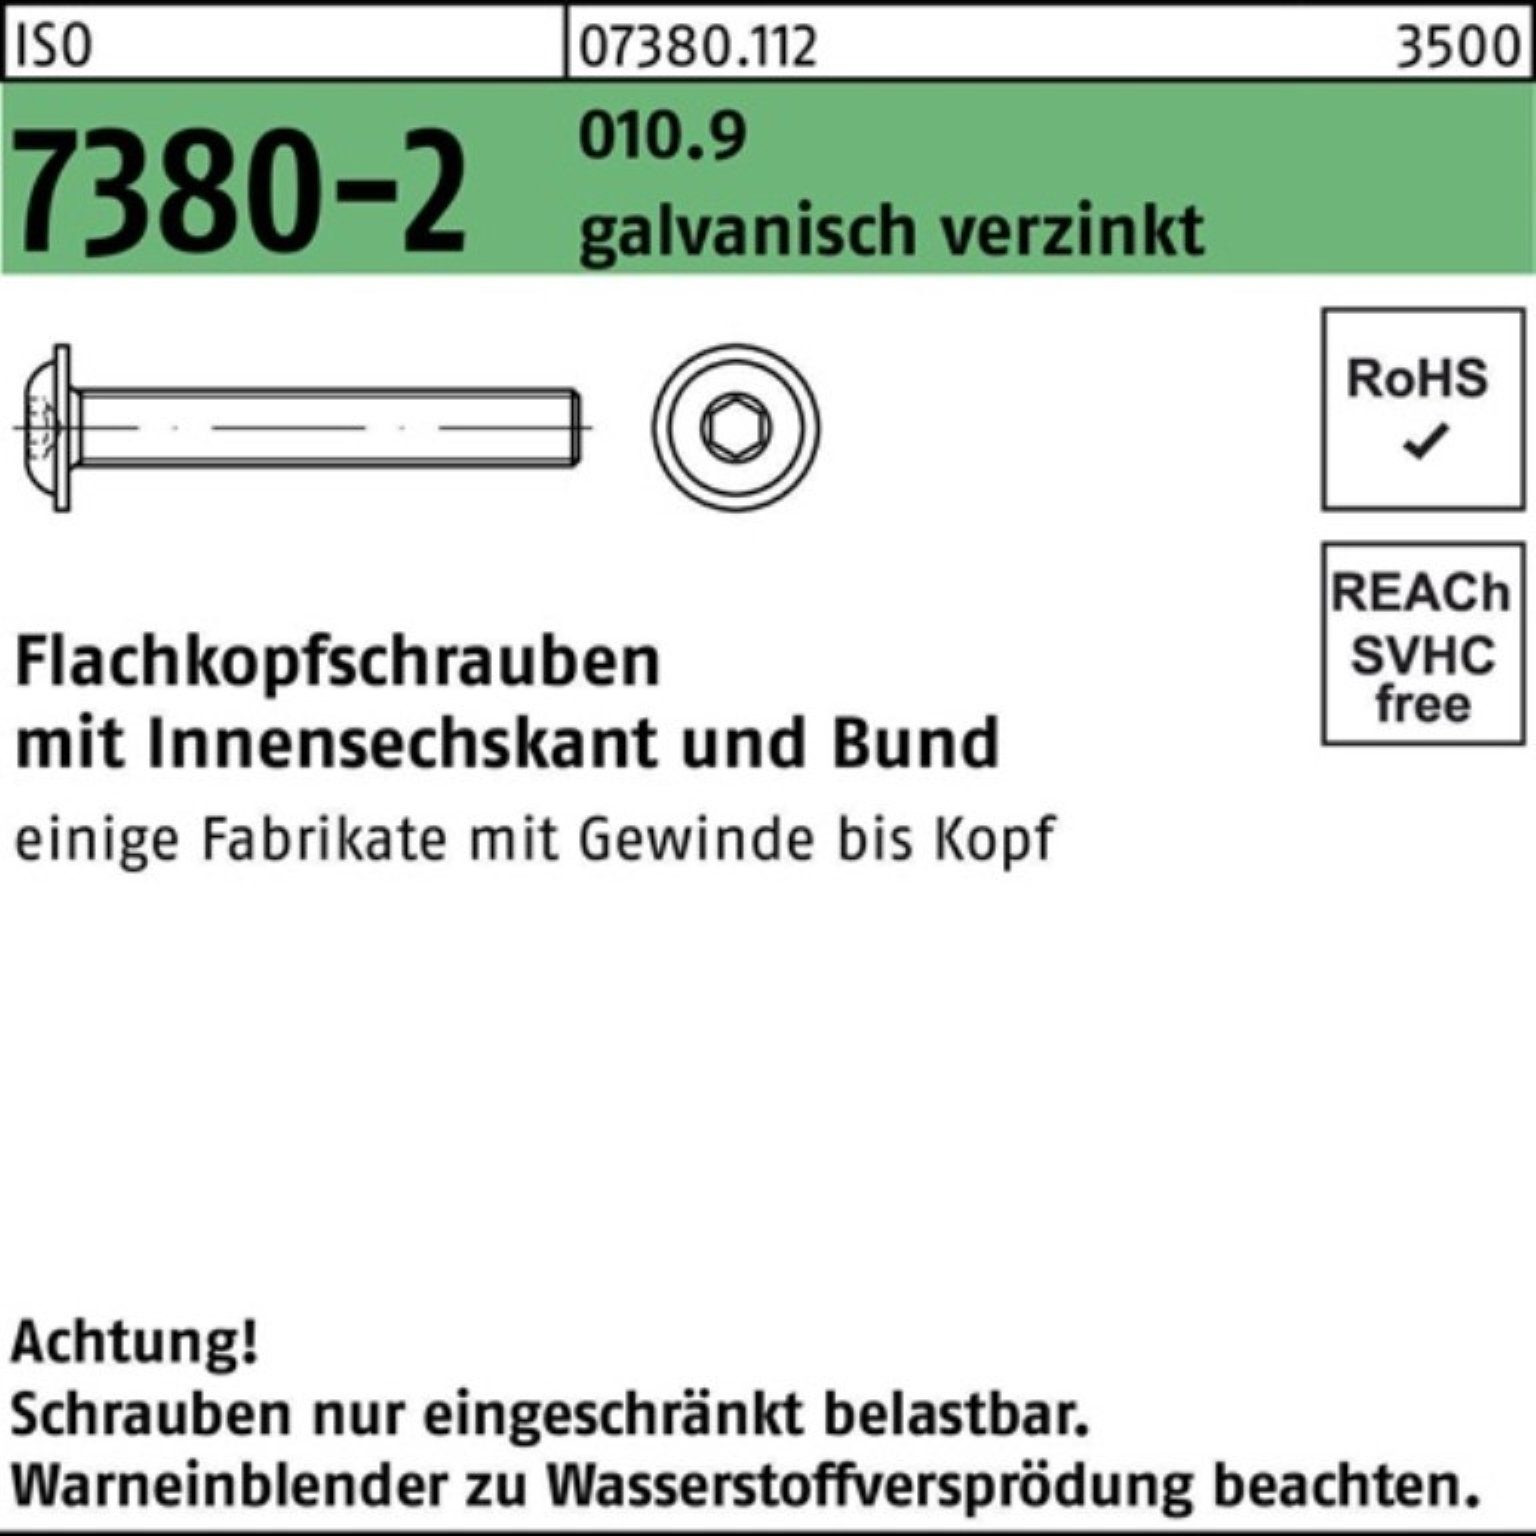 Bund/Innen-6kt Reyher Schraube Flachkopfschraube ISO M6x20 010.9 gal 7380-2 500er Pack